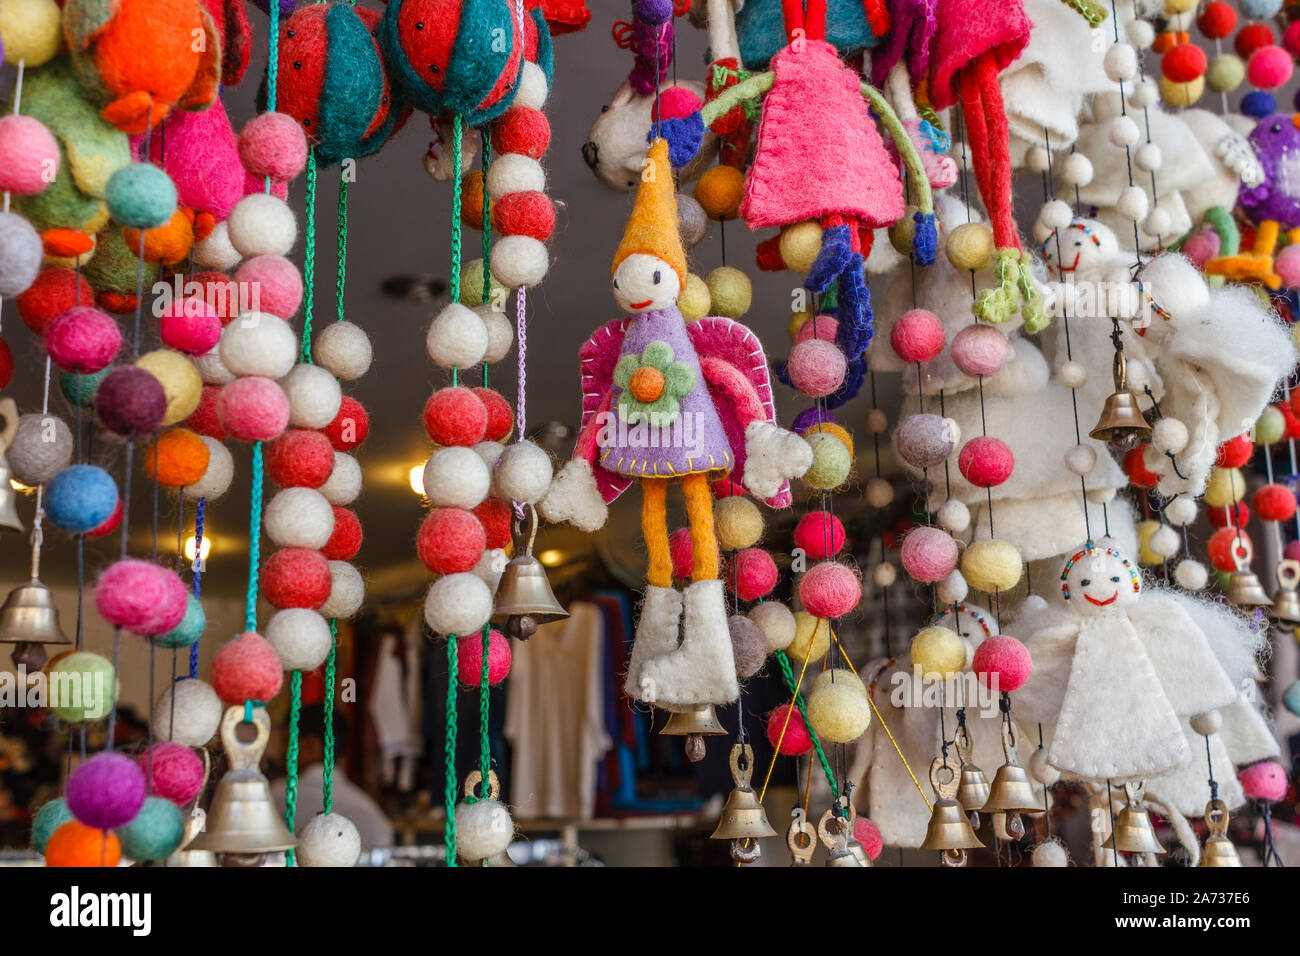 L'impression de jouets et de la décoration, de l'artisanat d'étals de rue dans la région de Pokhara, Népal Banque D'Images